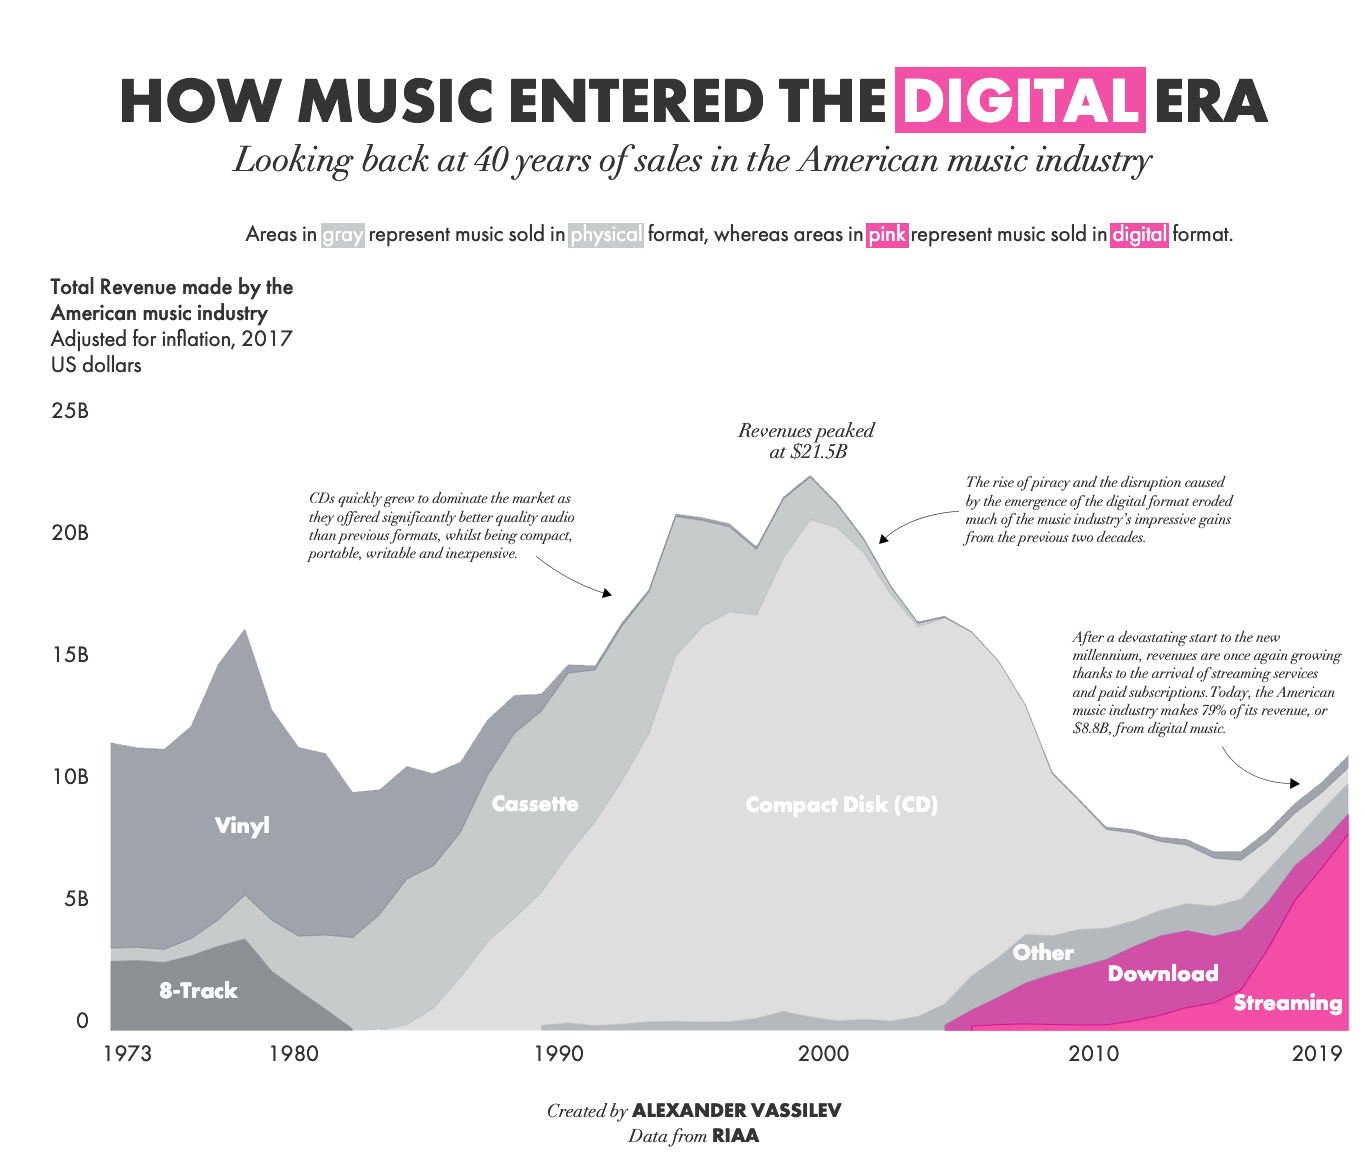 Выручка в американской музыкальной индустрии с начала 1970-х годов по типу носителя